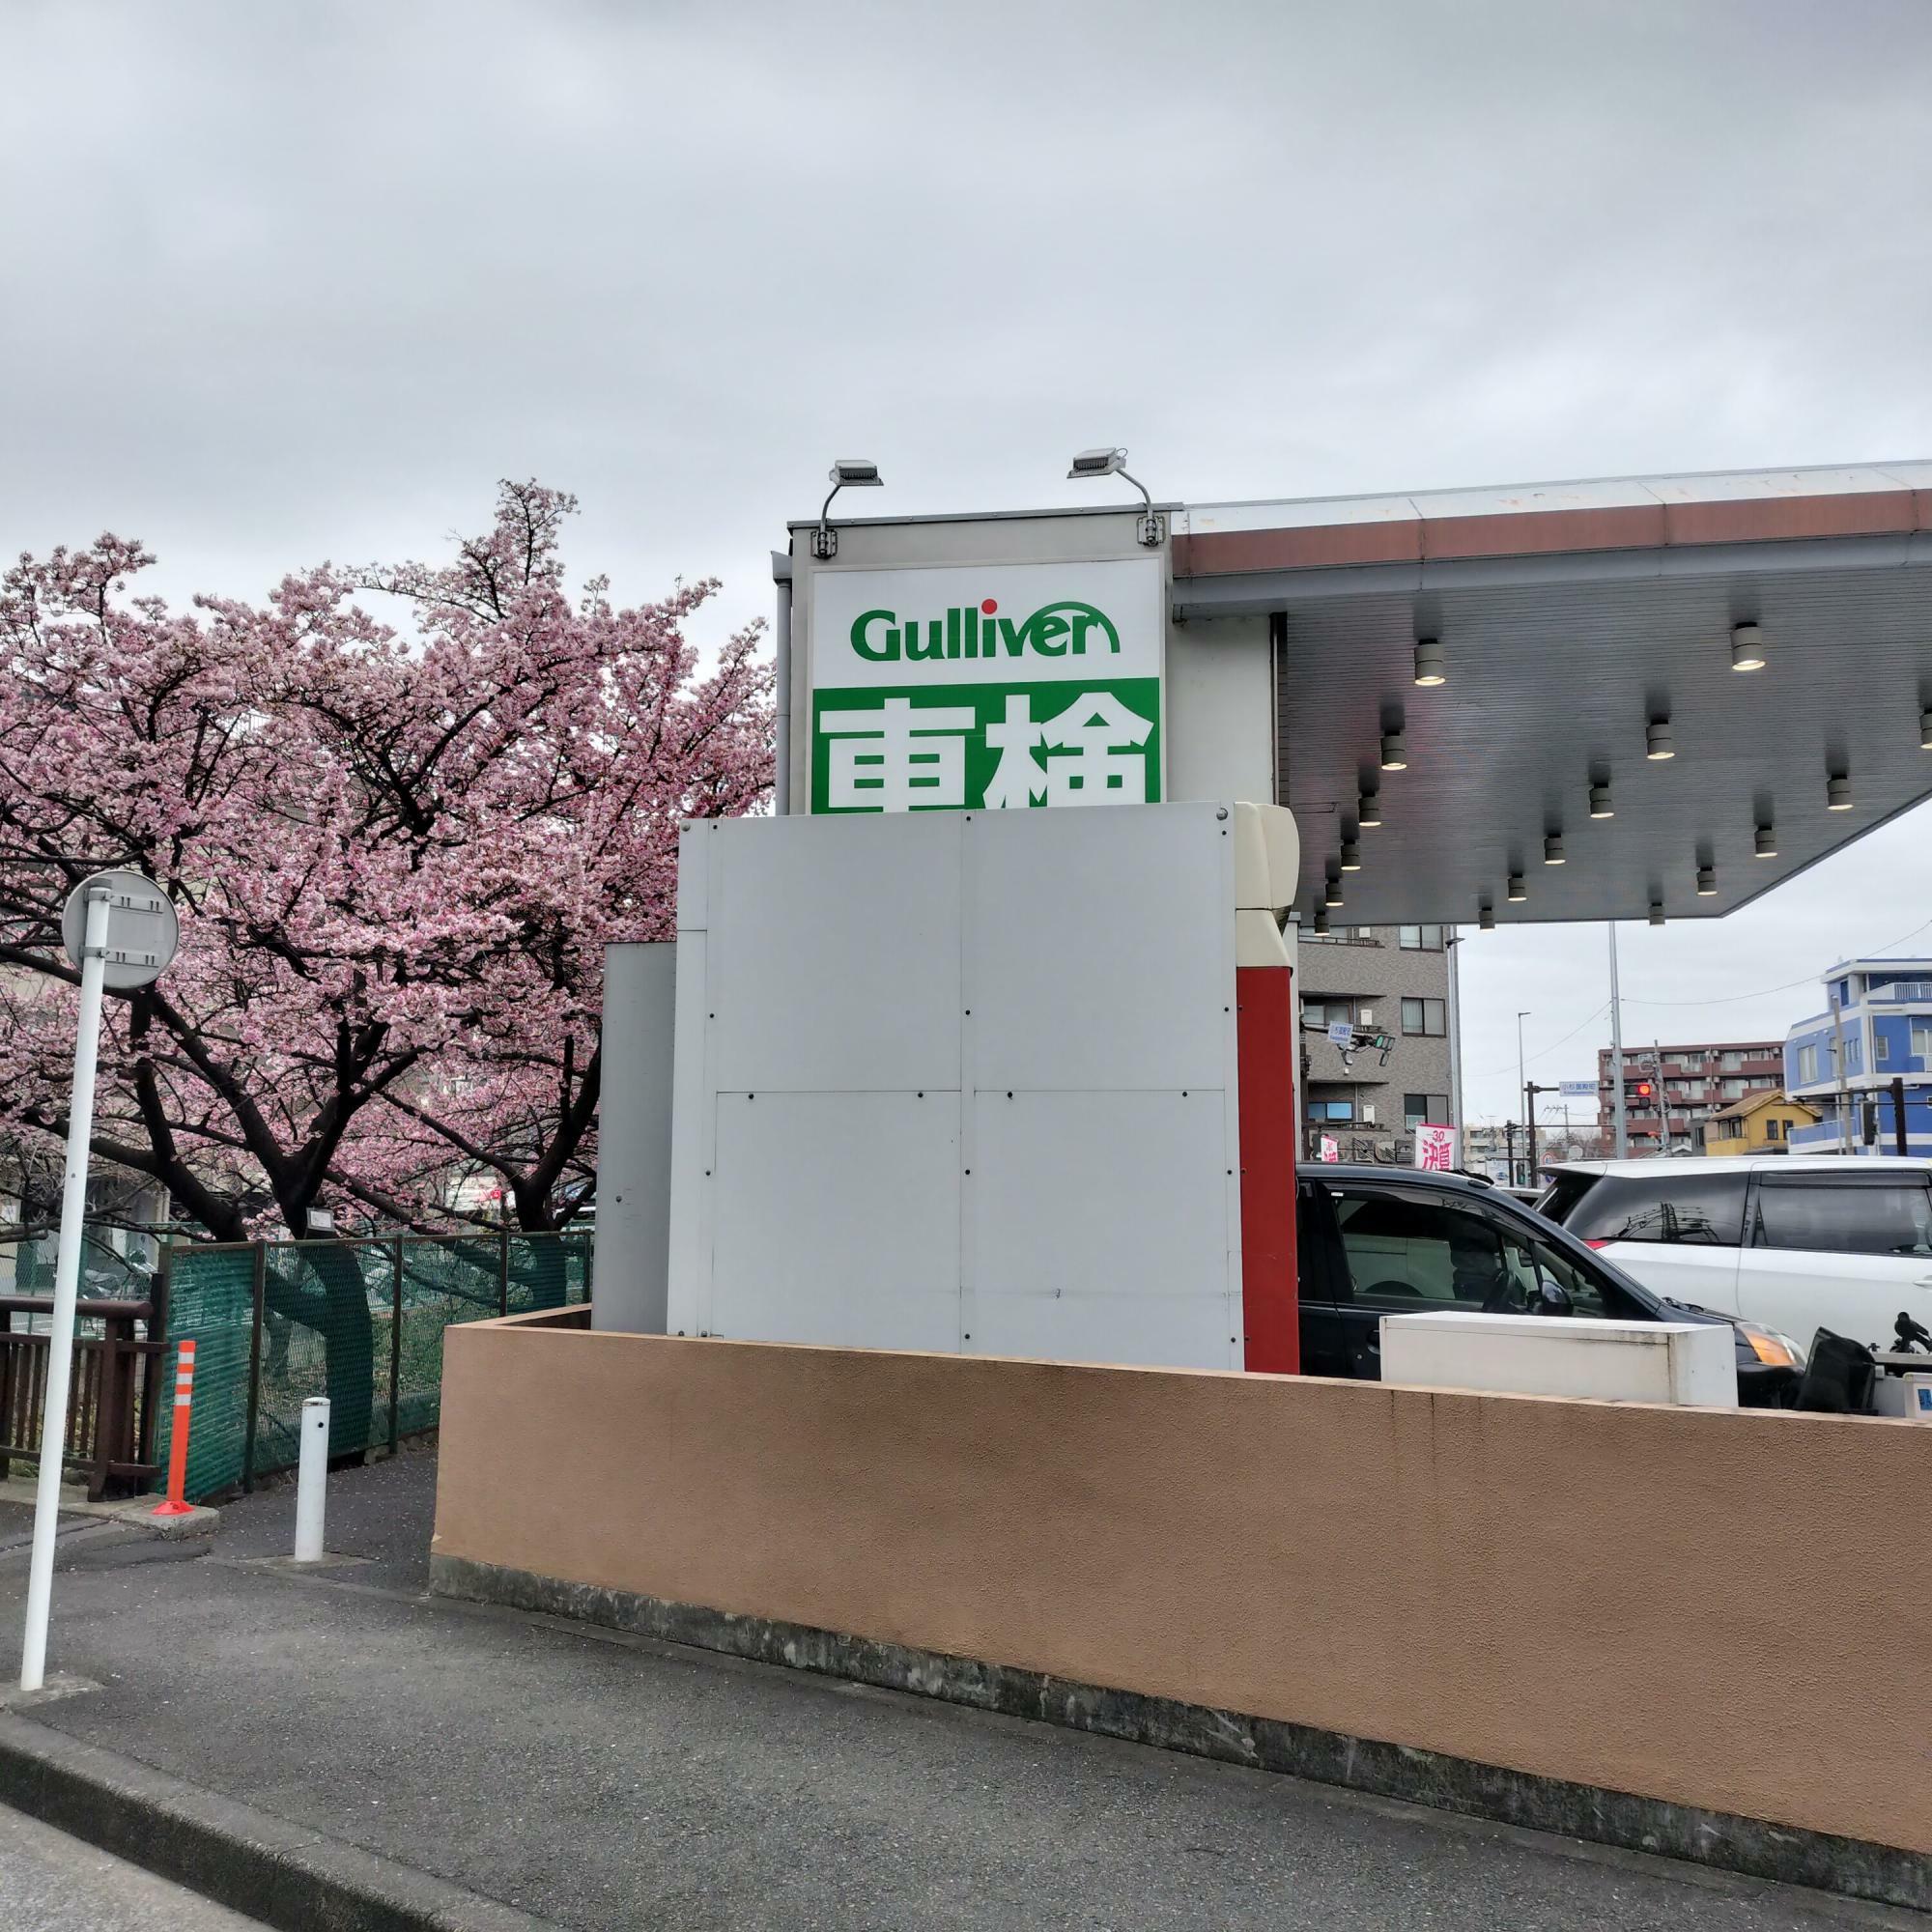 中古車販売「ガリバー武蔵小杉店」の裏にある2本の河津桜